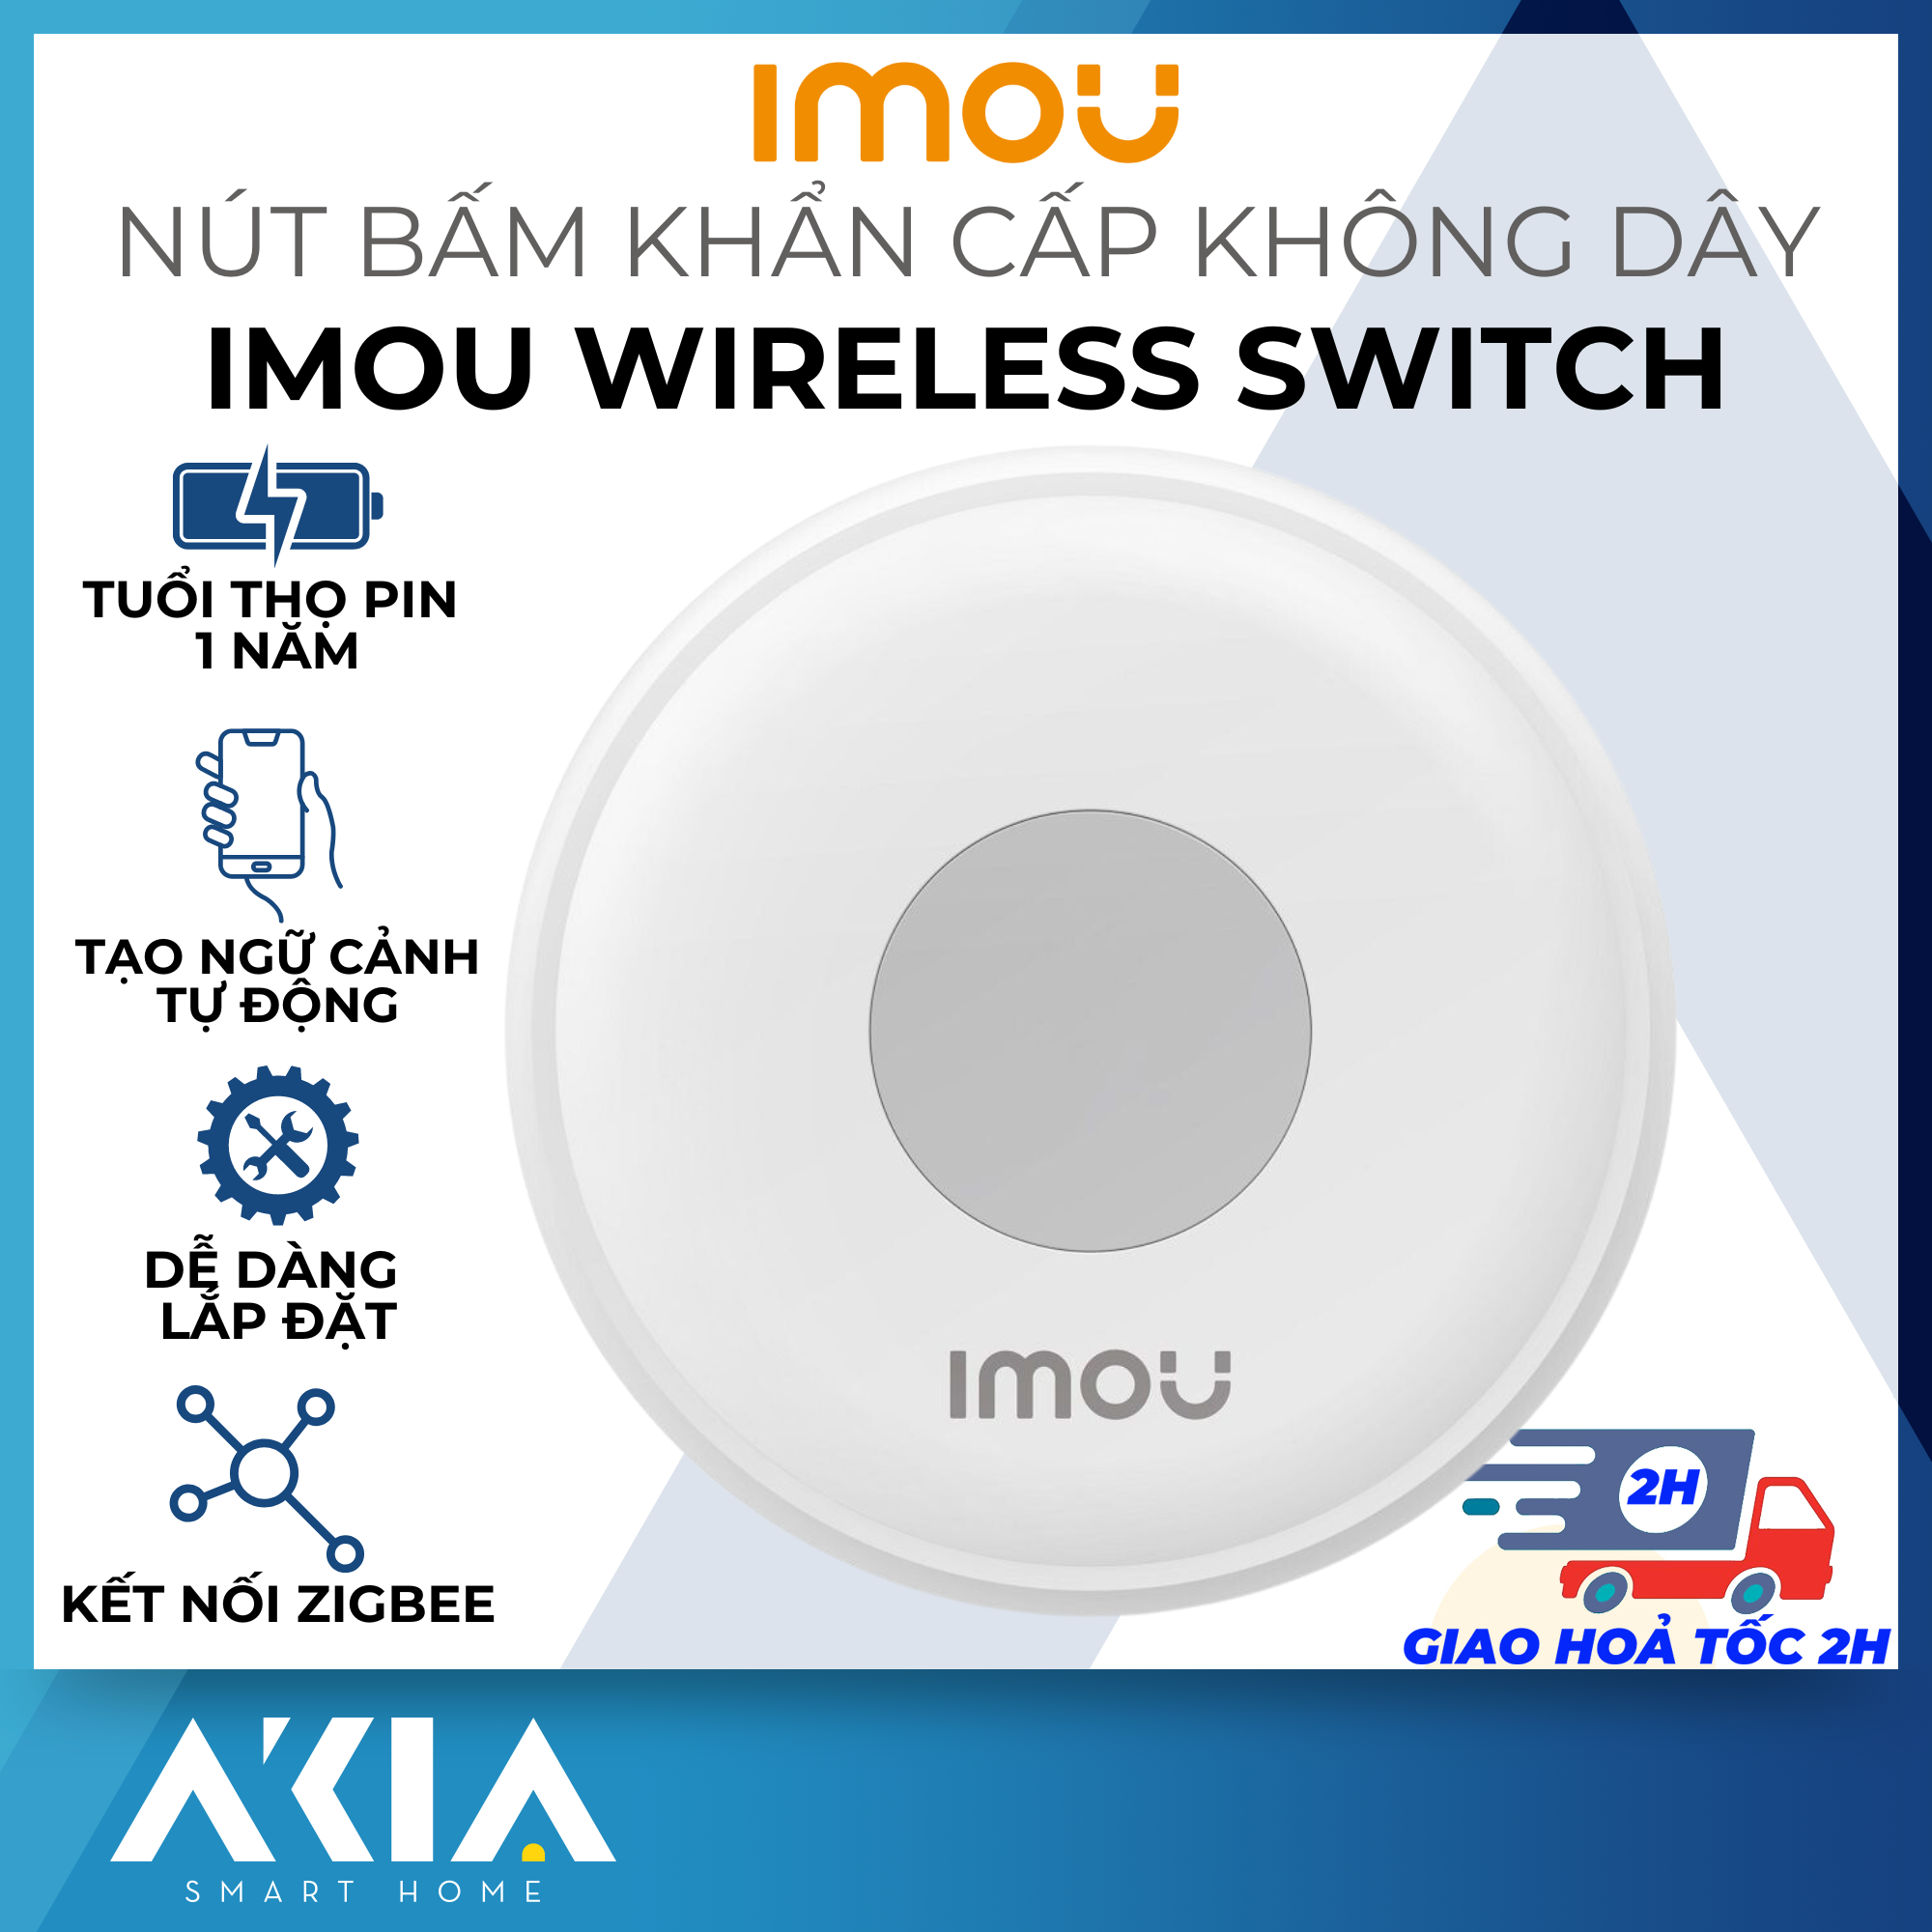 Nút bấm khẩn cấp không dây Imou ZE1 Wireless Switch - Hàng chính hãng